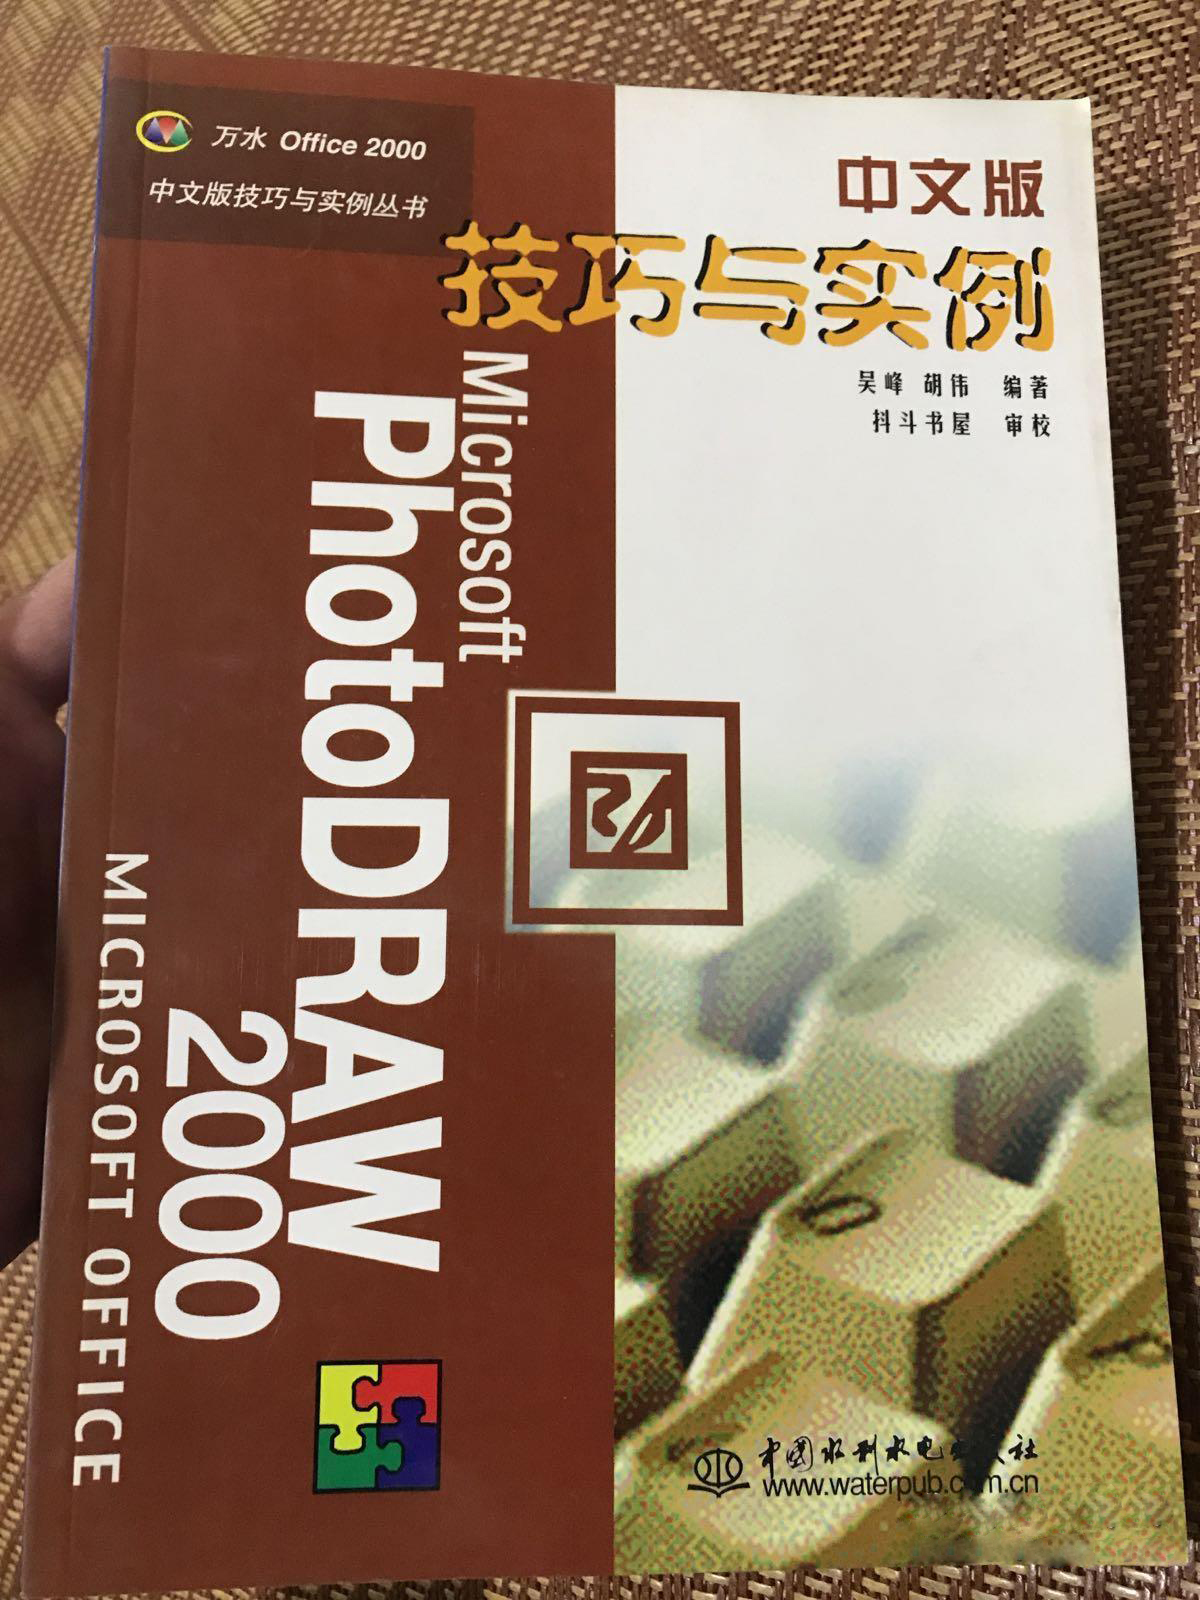 PhotoDRAW 2000中文版技巧與實例